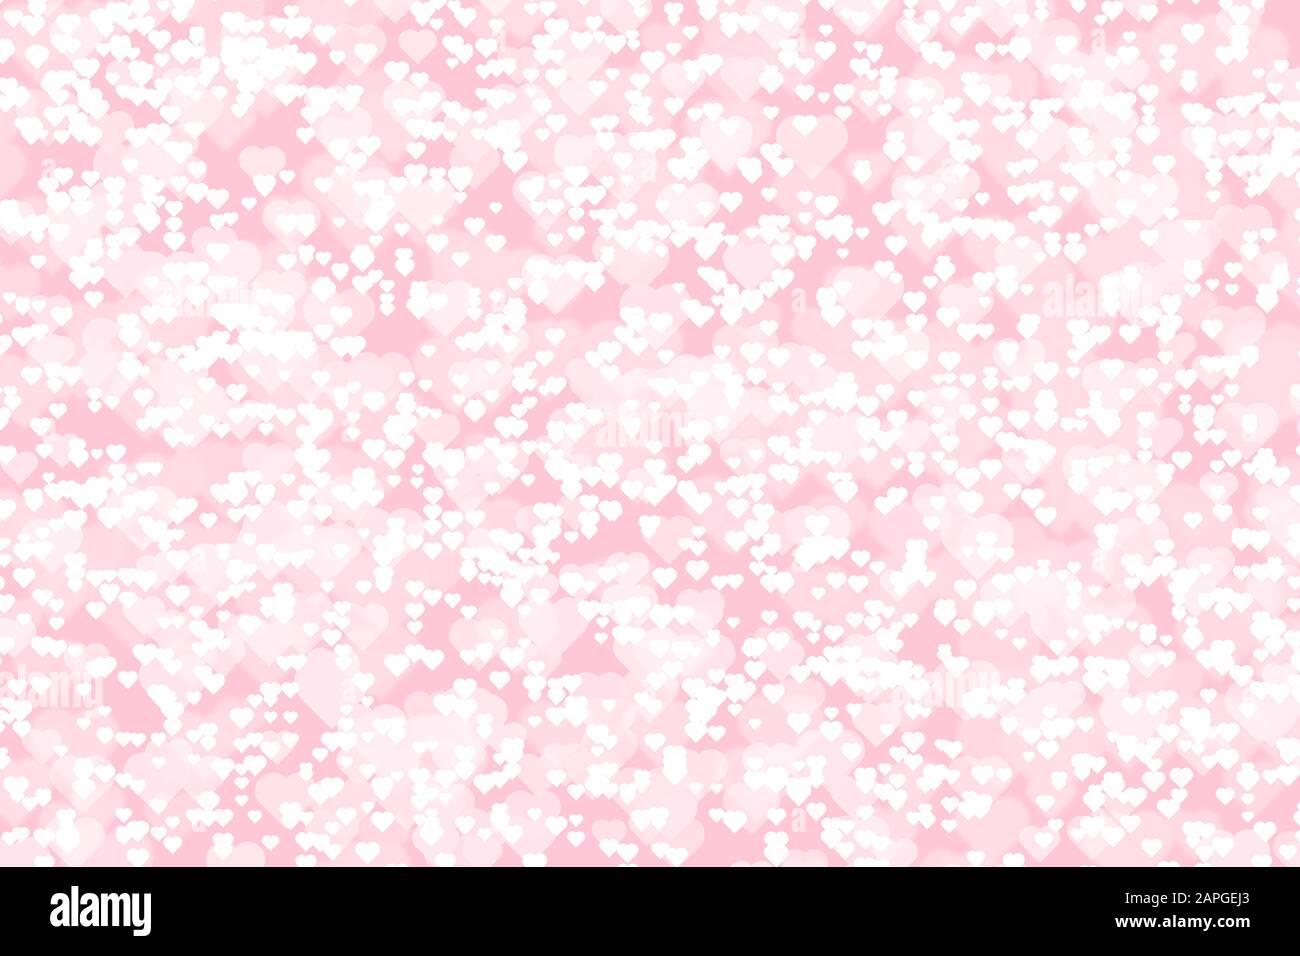 Fond rose avec coeurs blancs de taille différente. Illustration Banque D'Images